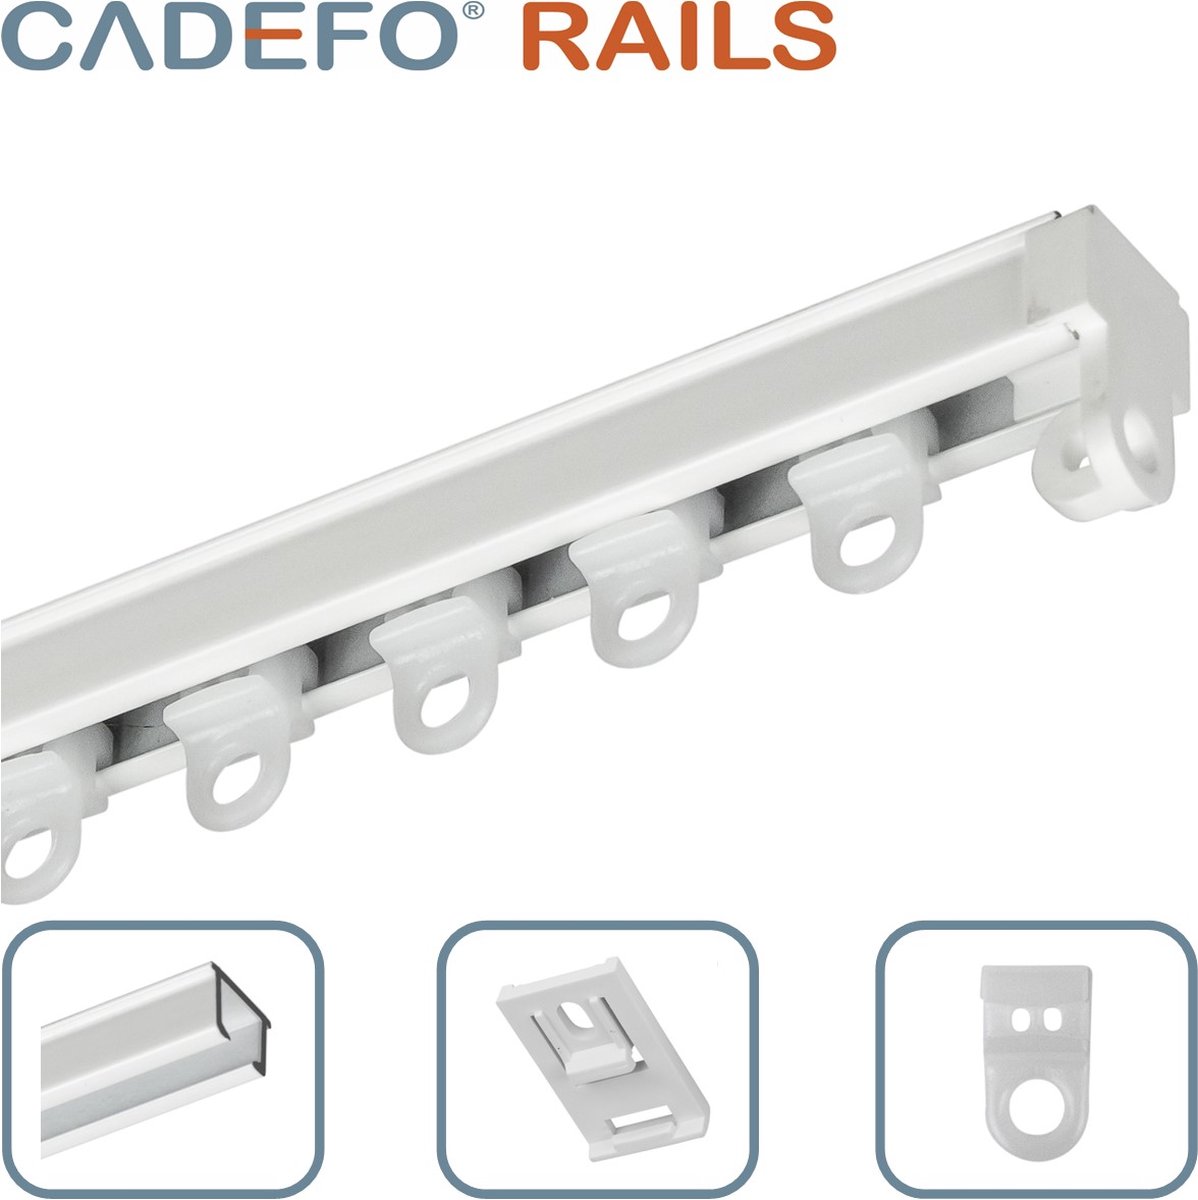 CADEFO RAILS (351 - 400 cm) Gordijnrails - Compleet op maat! - UIT 1 STUK - Leverbaar tot 6 meter - Plafondbevestiging - Lengte 394 cm